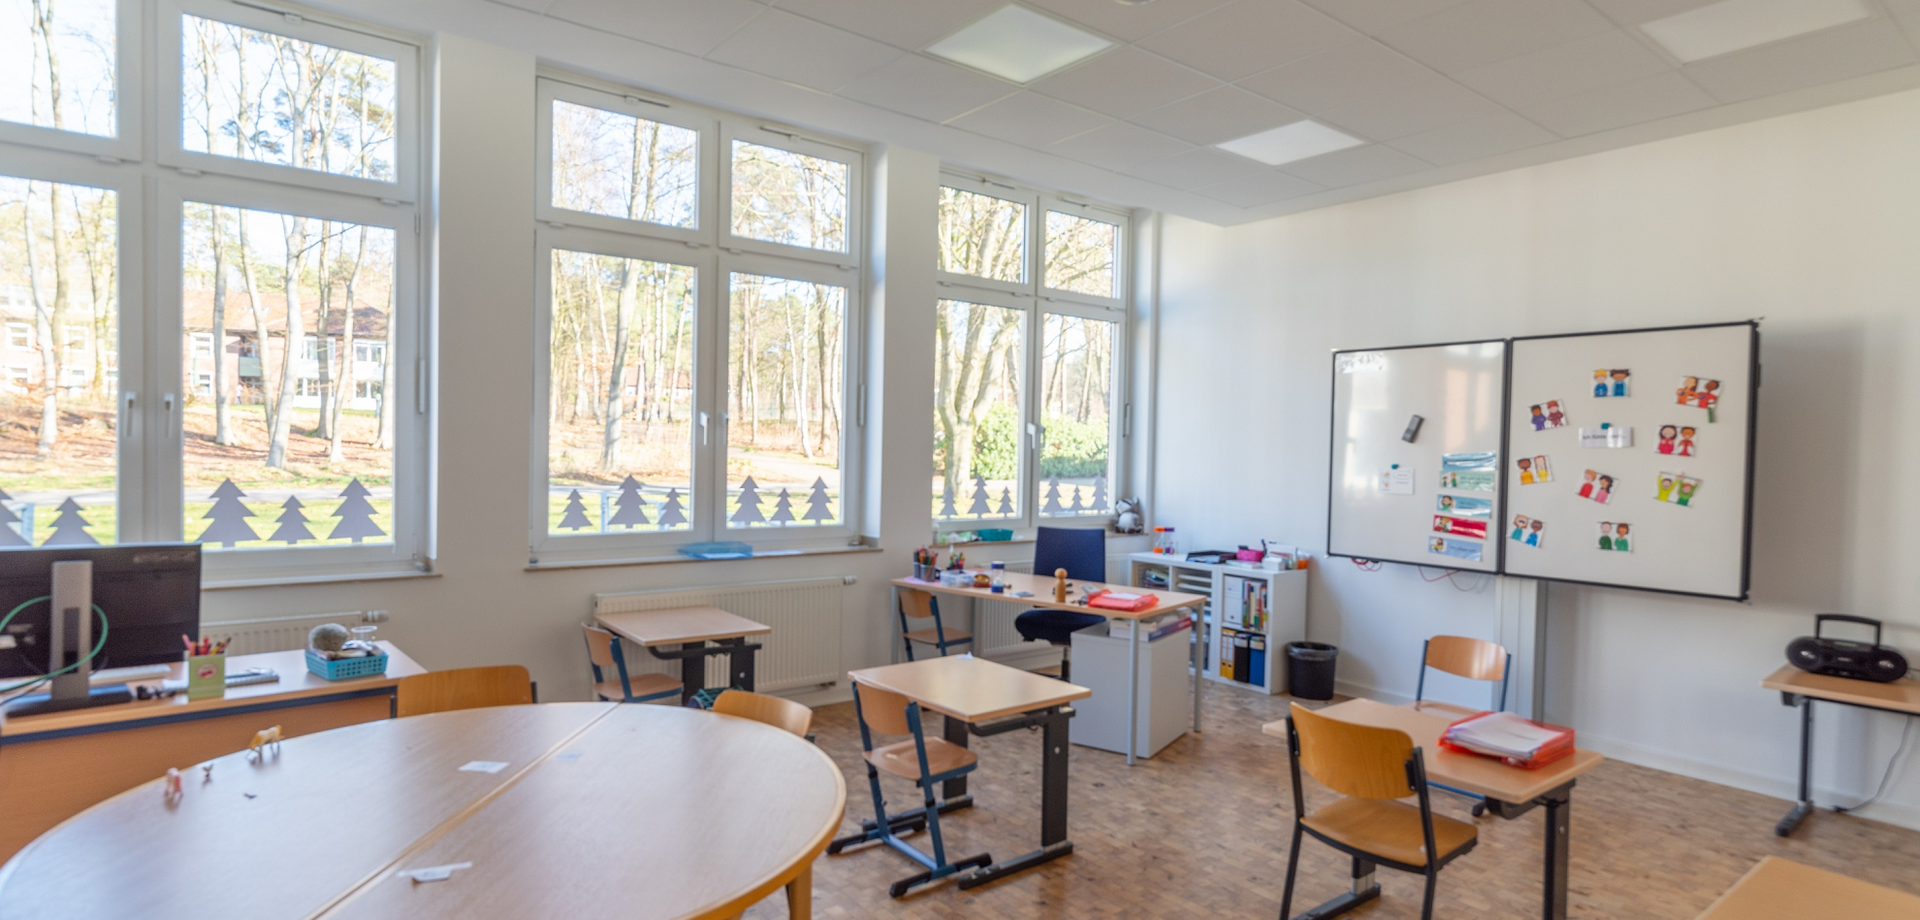 In einem hellen Klassenzimmer stehen Tische und Stühle, auf denen Stifte und Bastelmaterialien liegen. Durch die Fenster sieht man das grüne Gelände.